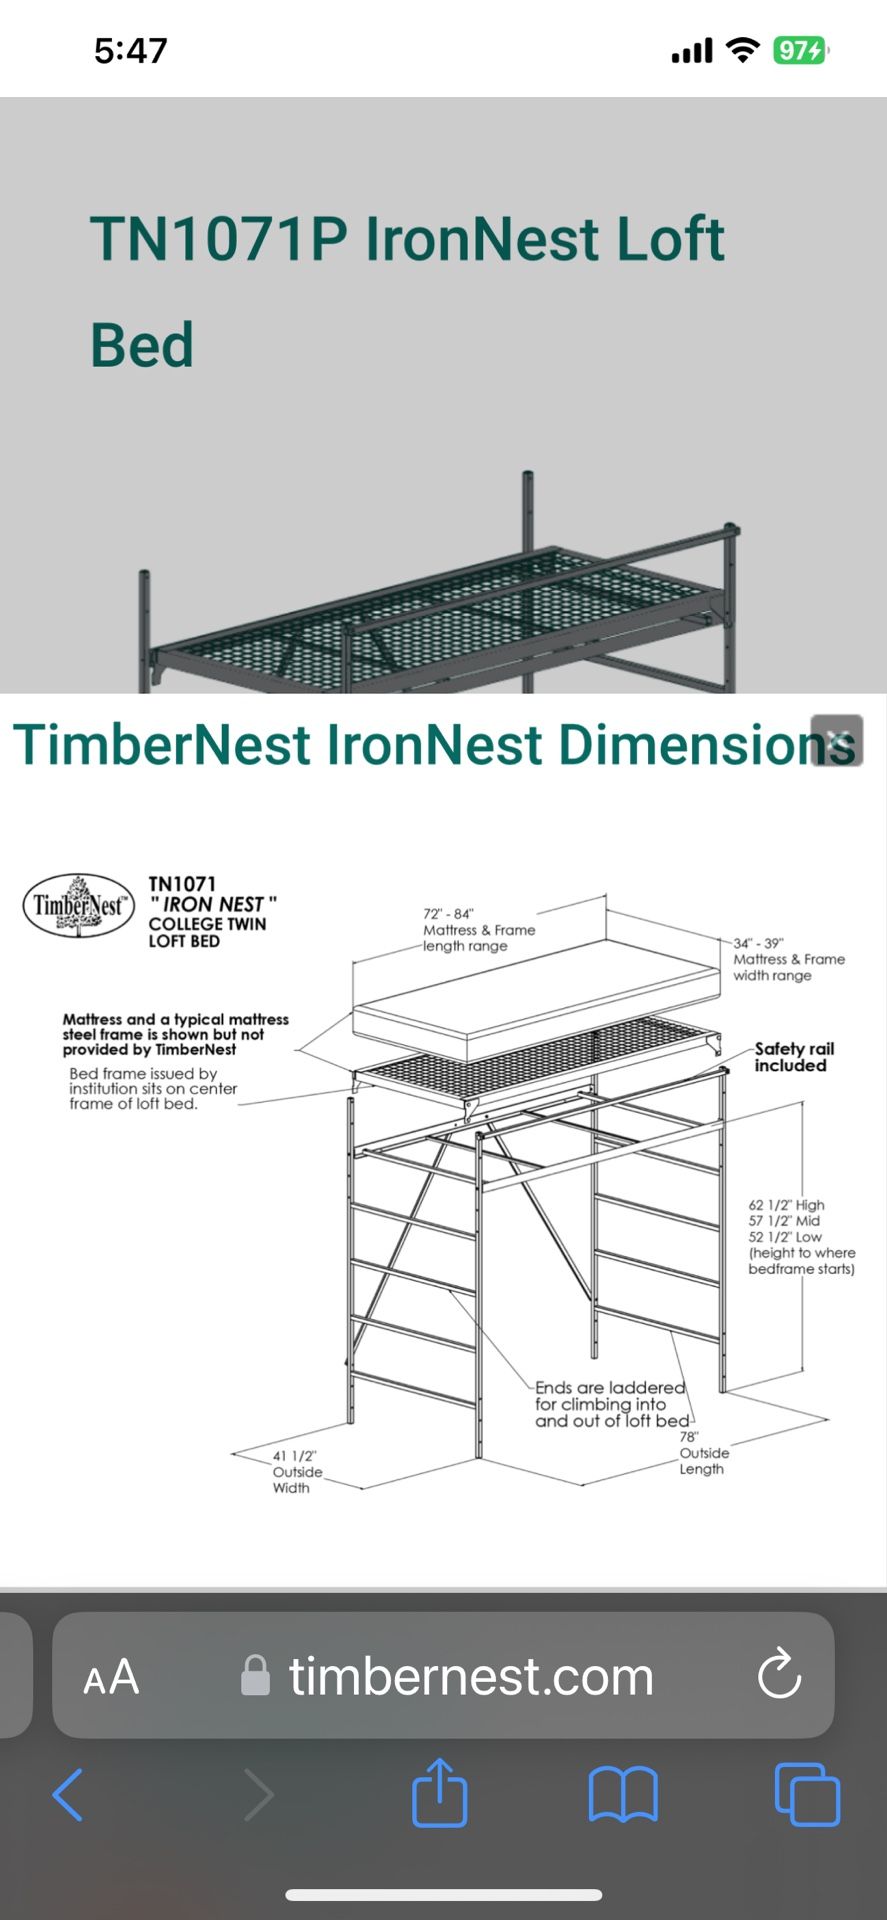 TimberNest TN1071P IronNest Loft Bed